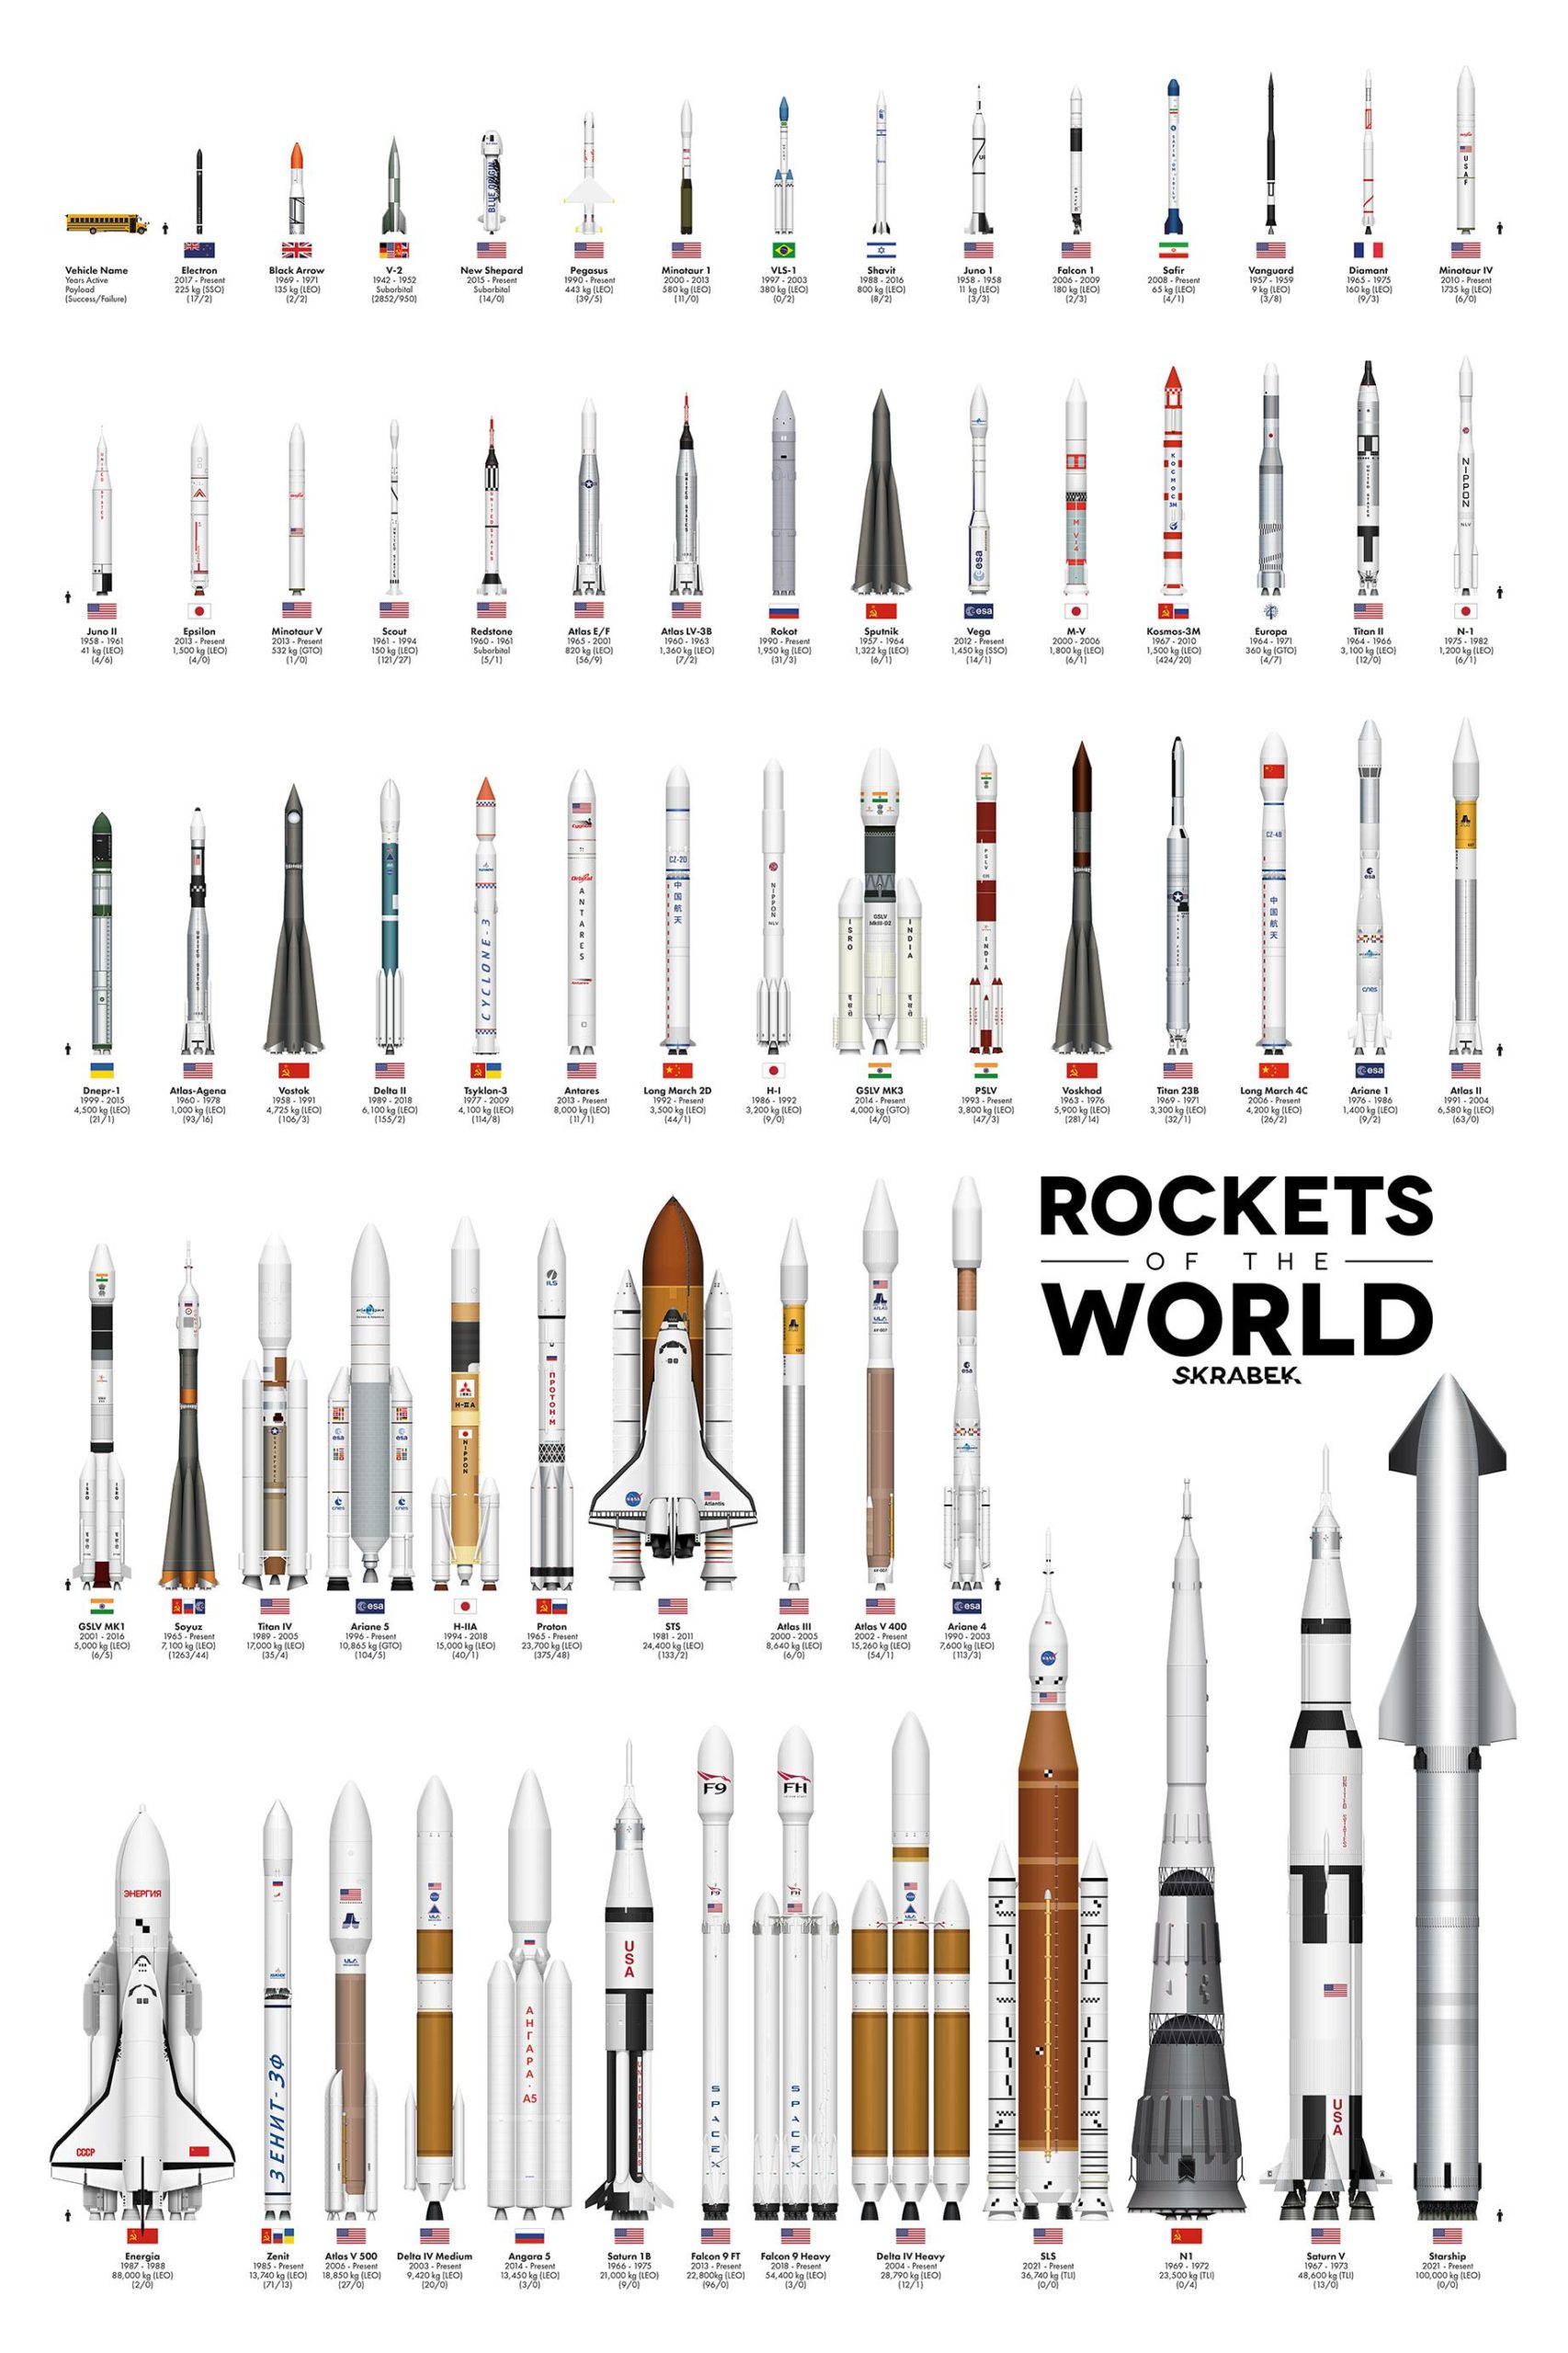 Cohetes y sus tamaños a traves de los años